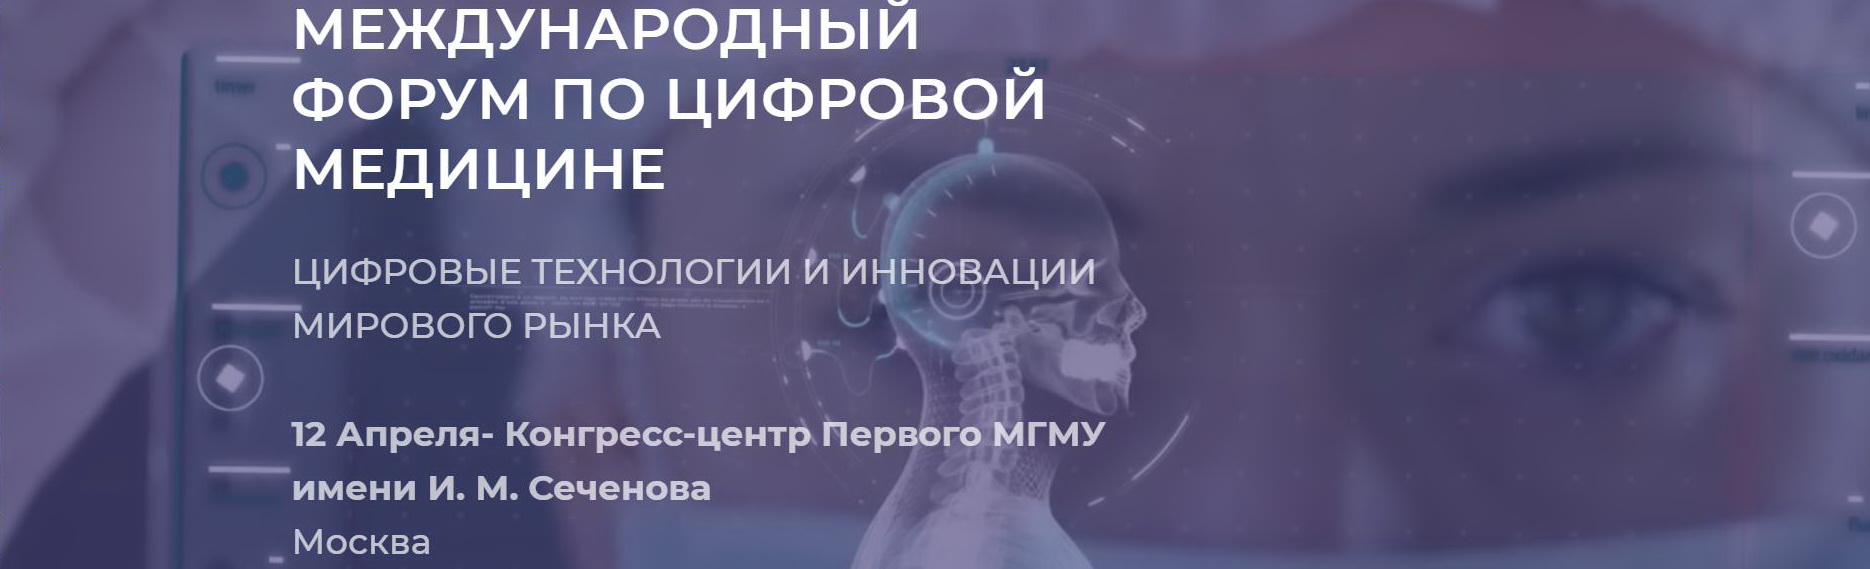 Международный Форум по Цифровой Медицине 12 апреля 2019 года на площадке Первого МГМУ им. Сеченова города Москвы